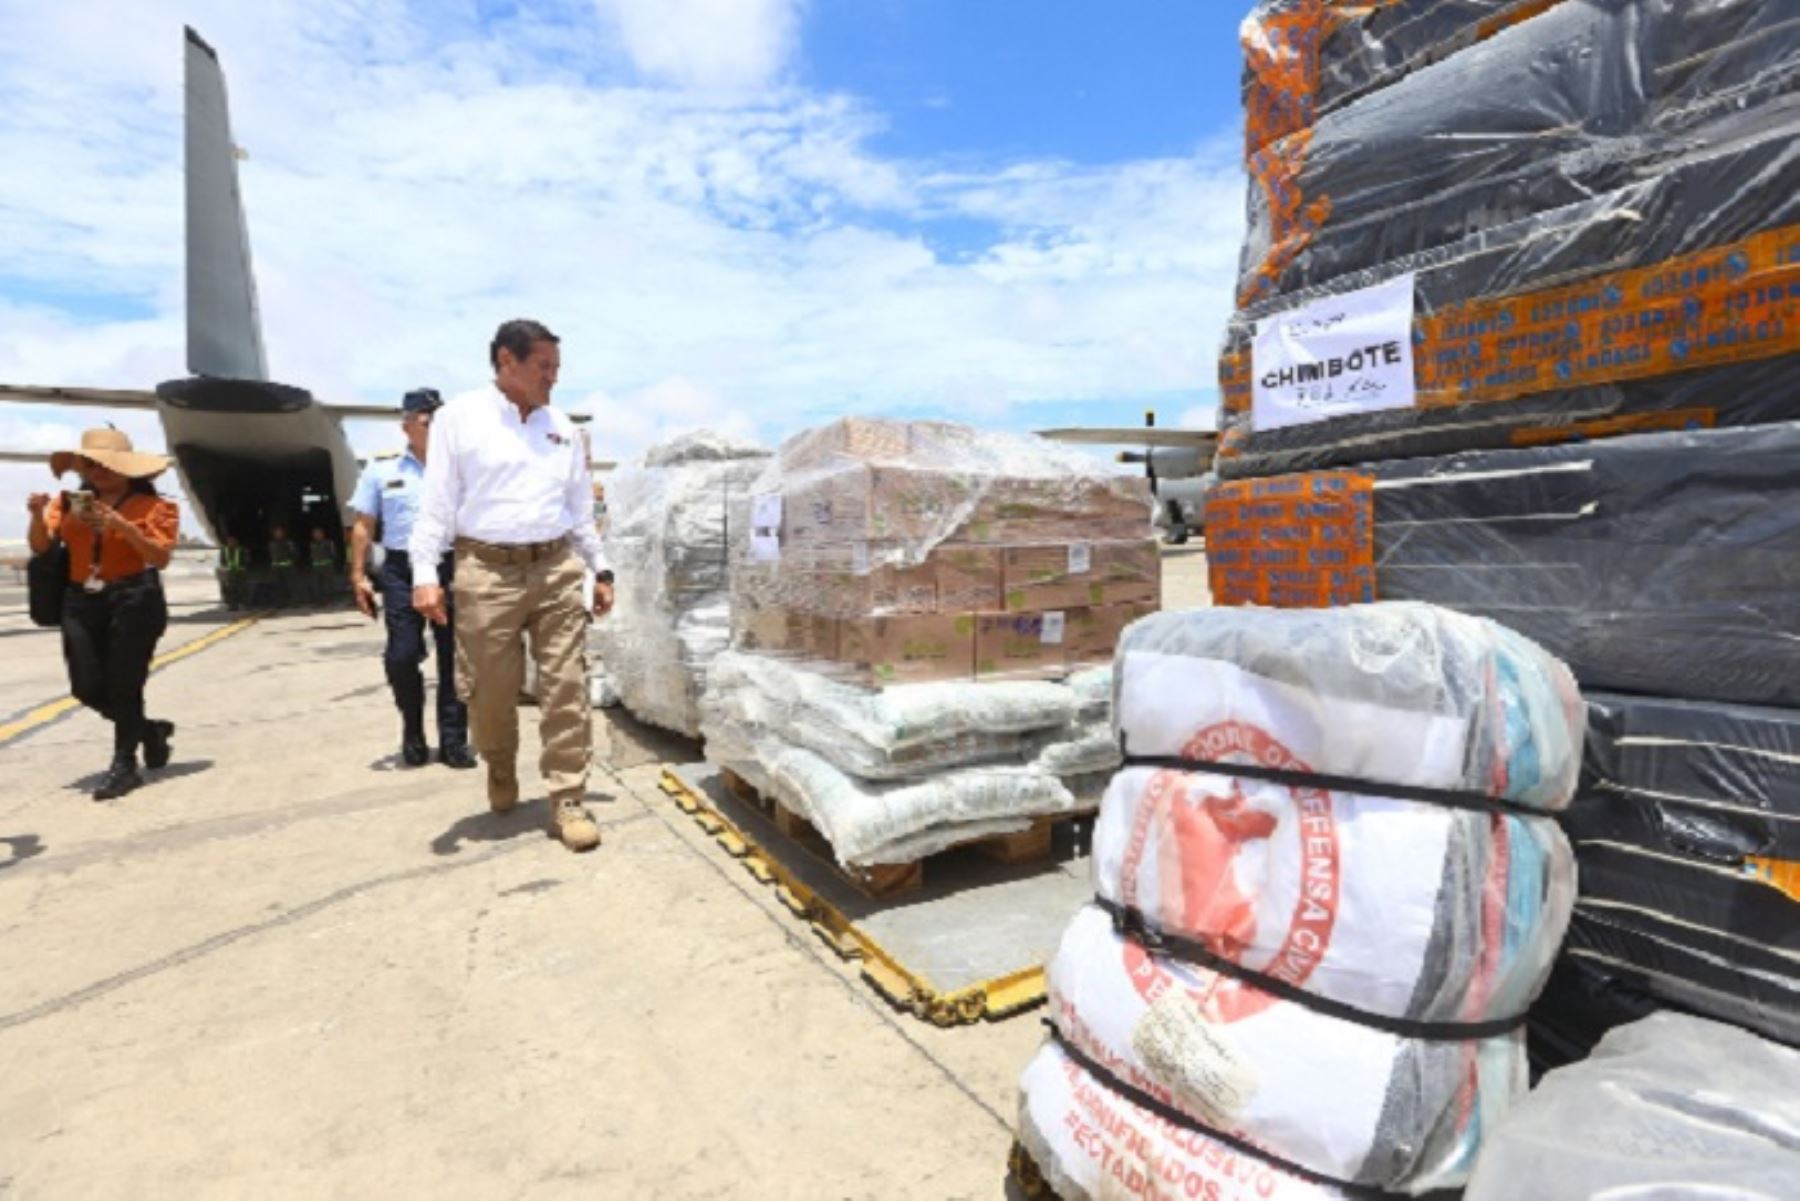 Mañana se continuará trasladando otras 30 toneladas para las regiones del norte, adelantó el ministro Jorge Chávez.